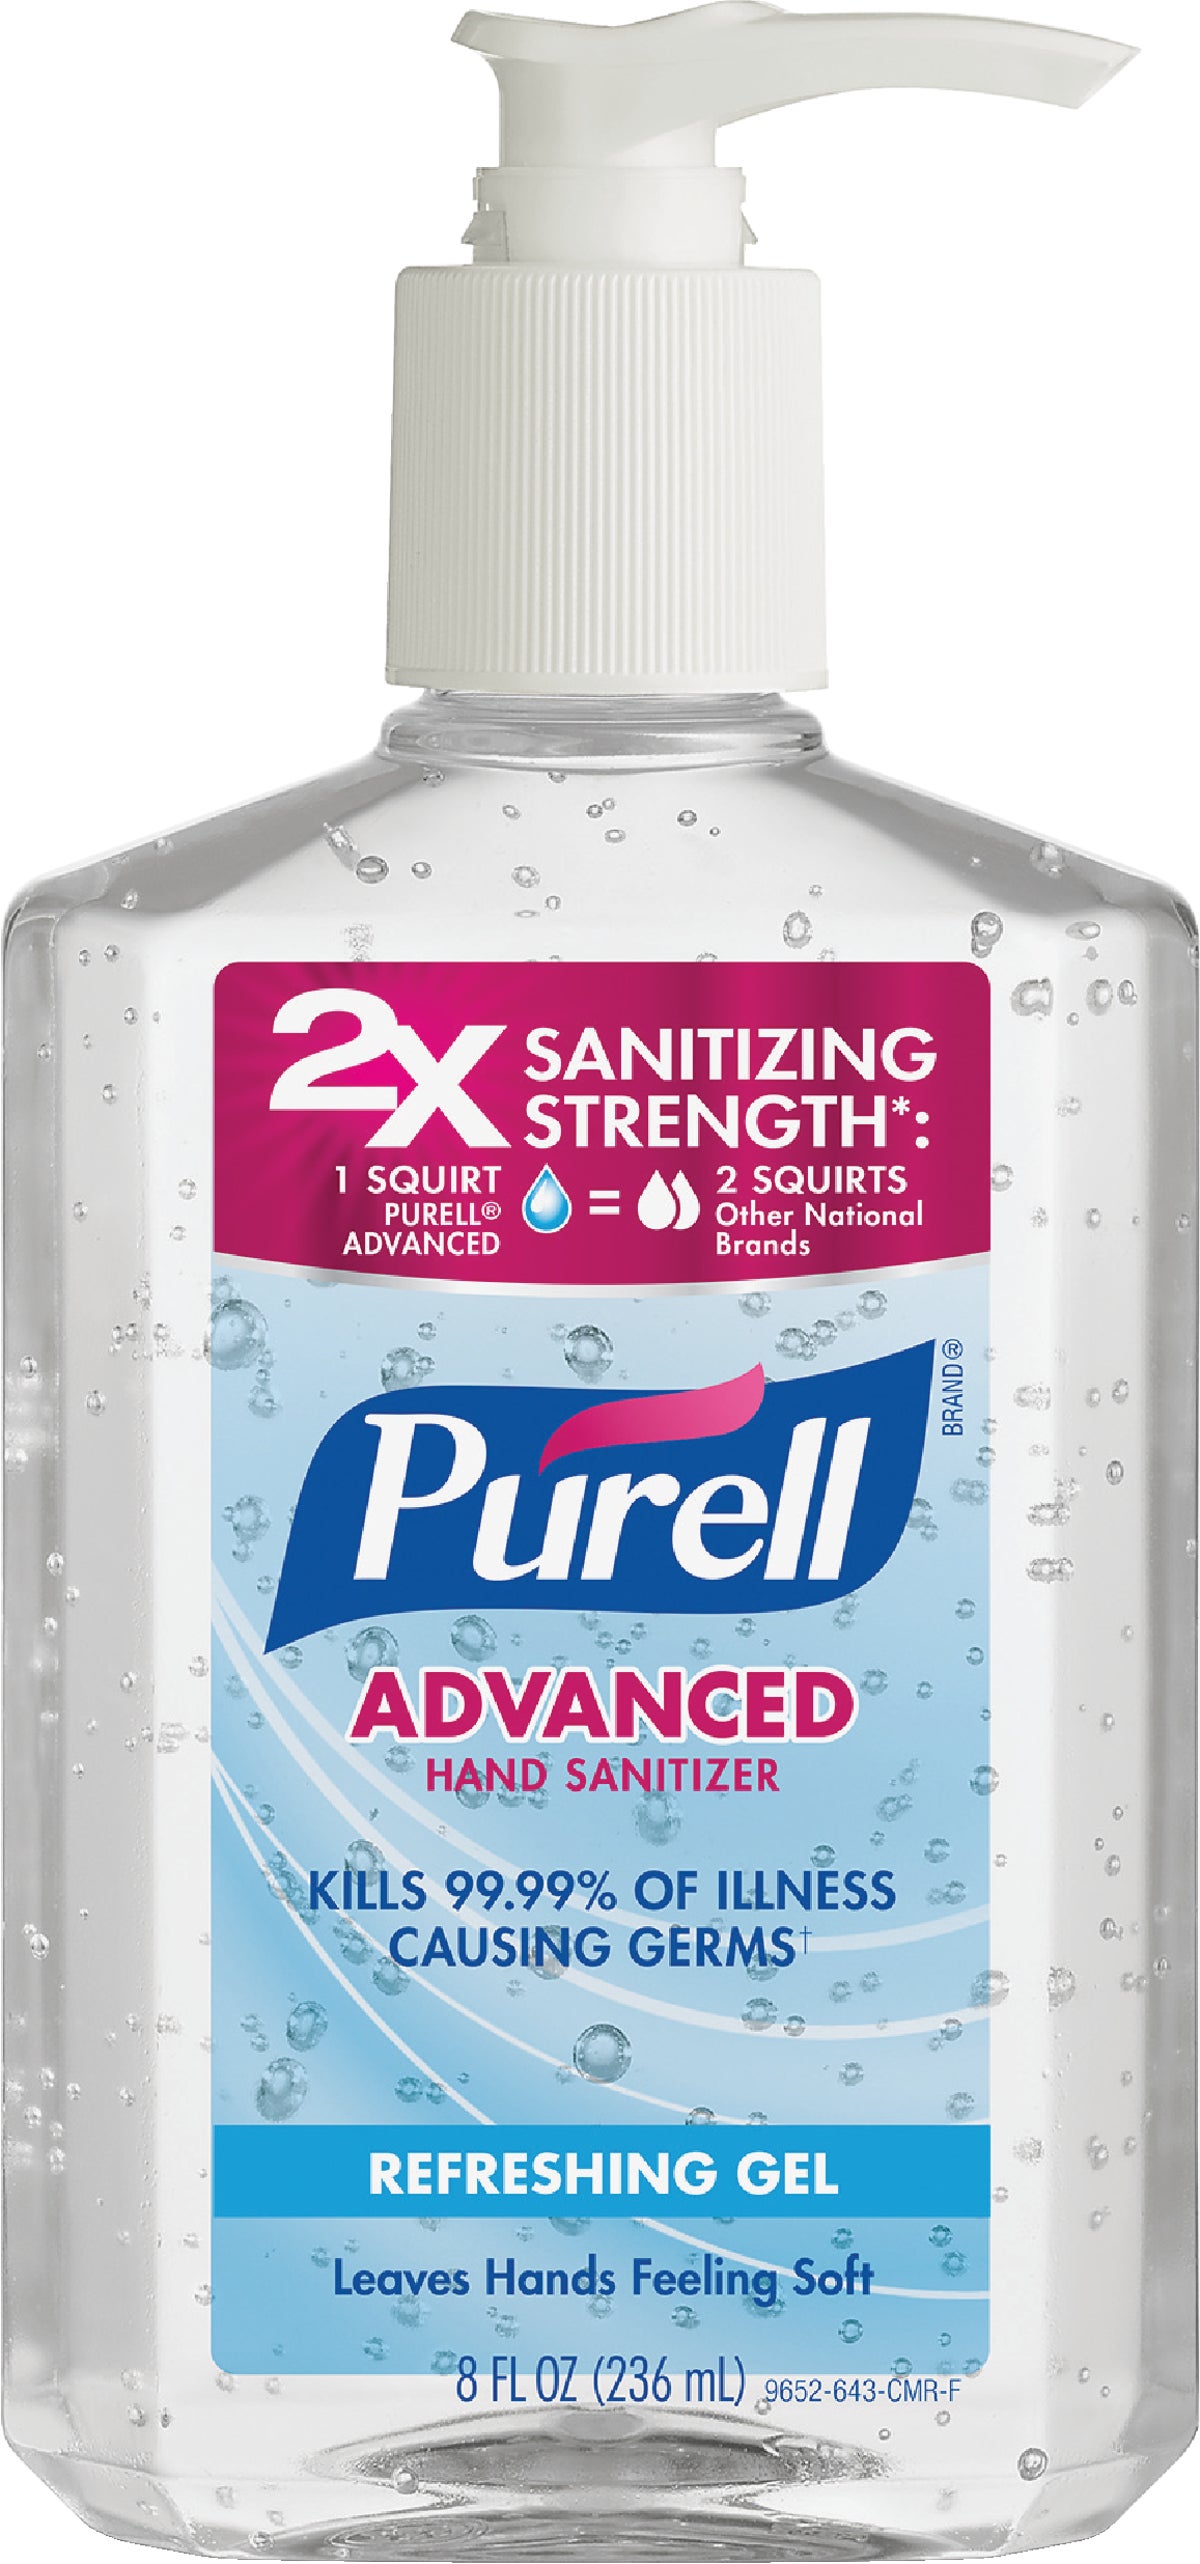 Purell санитайзер. Sanitizer гель. Hand Sanitizer. Refreshing gel